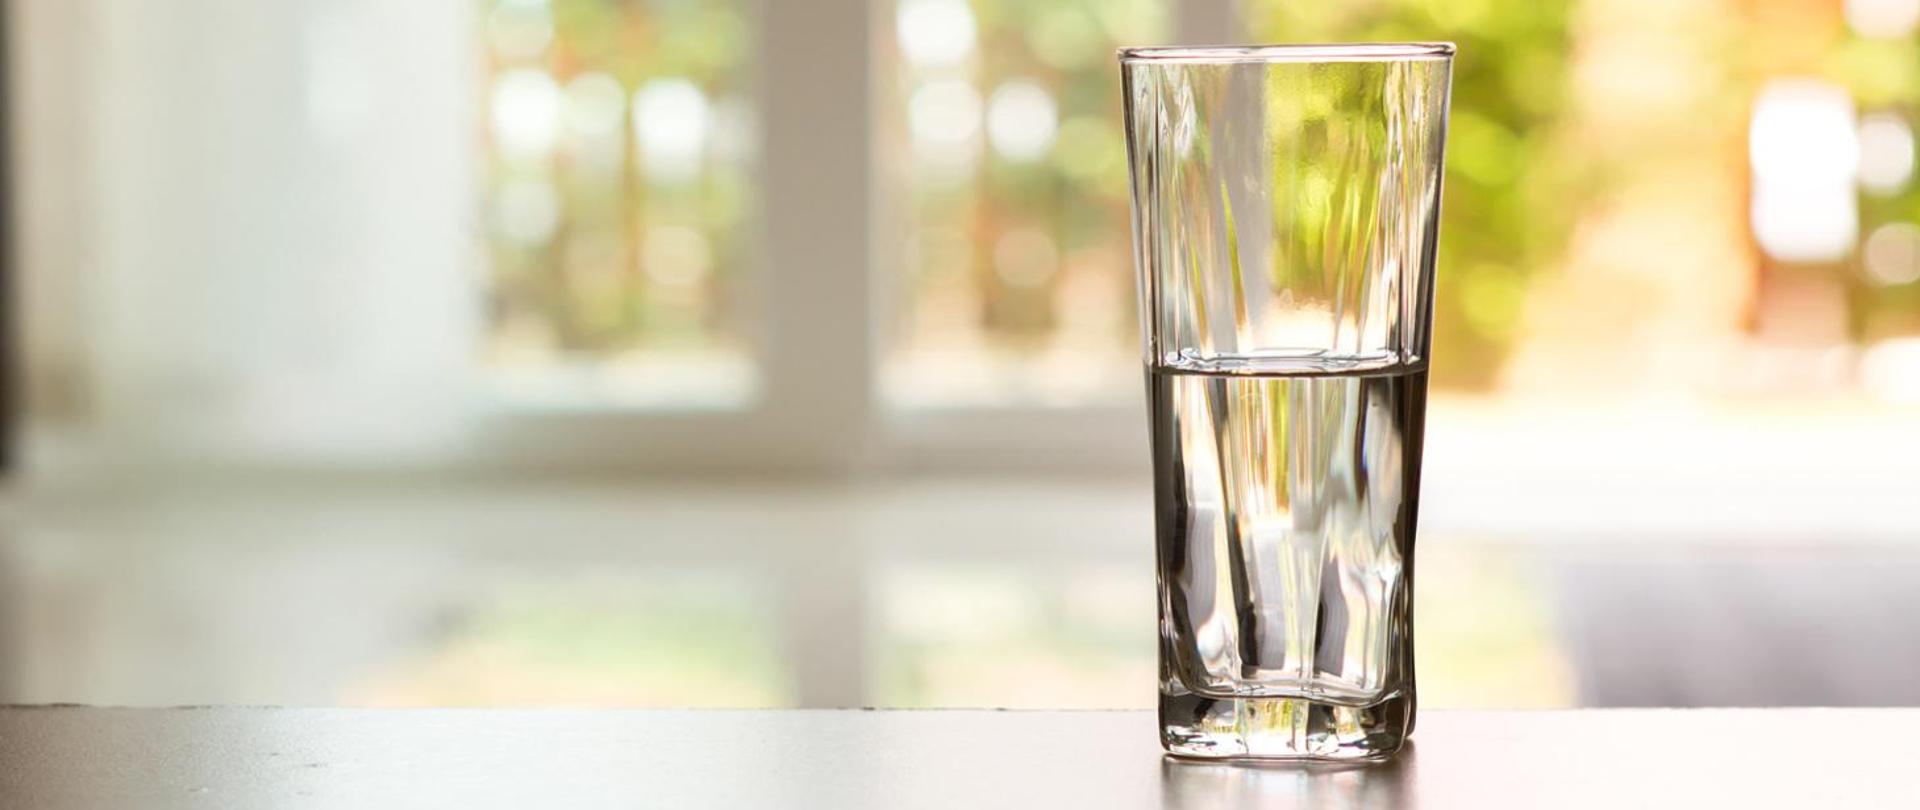 Na blacie stoi przezroczysta szklanka do połowy napełniona wodą